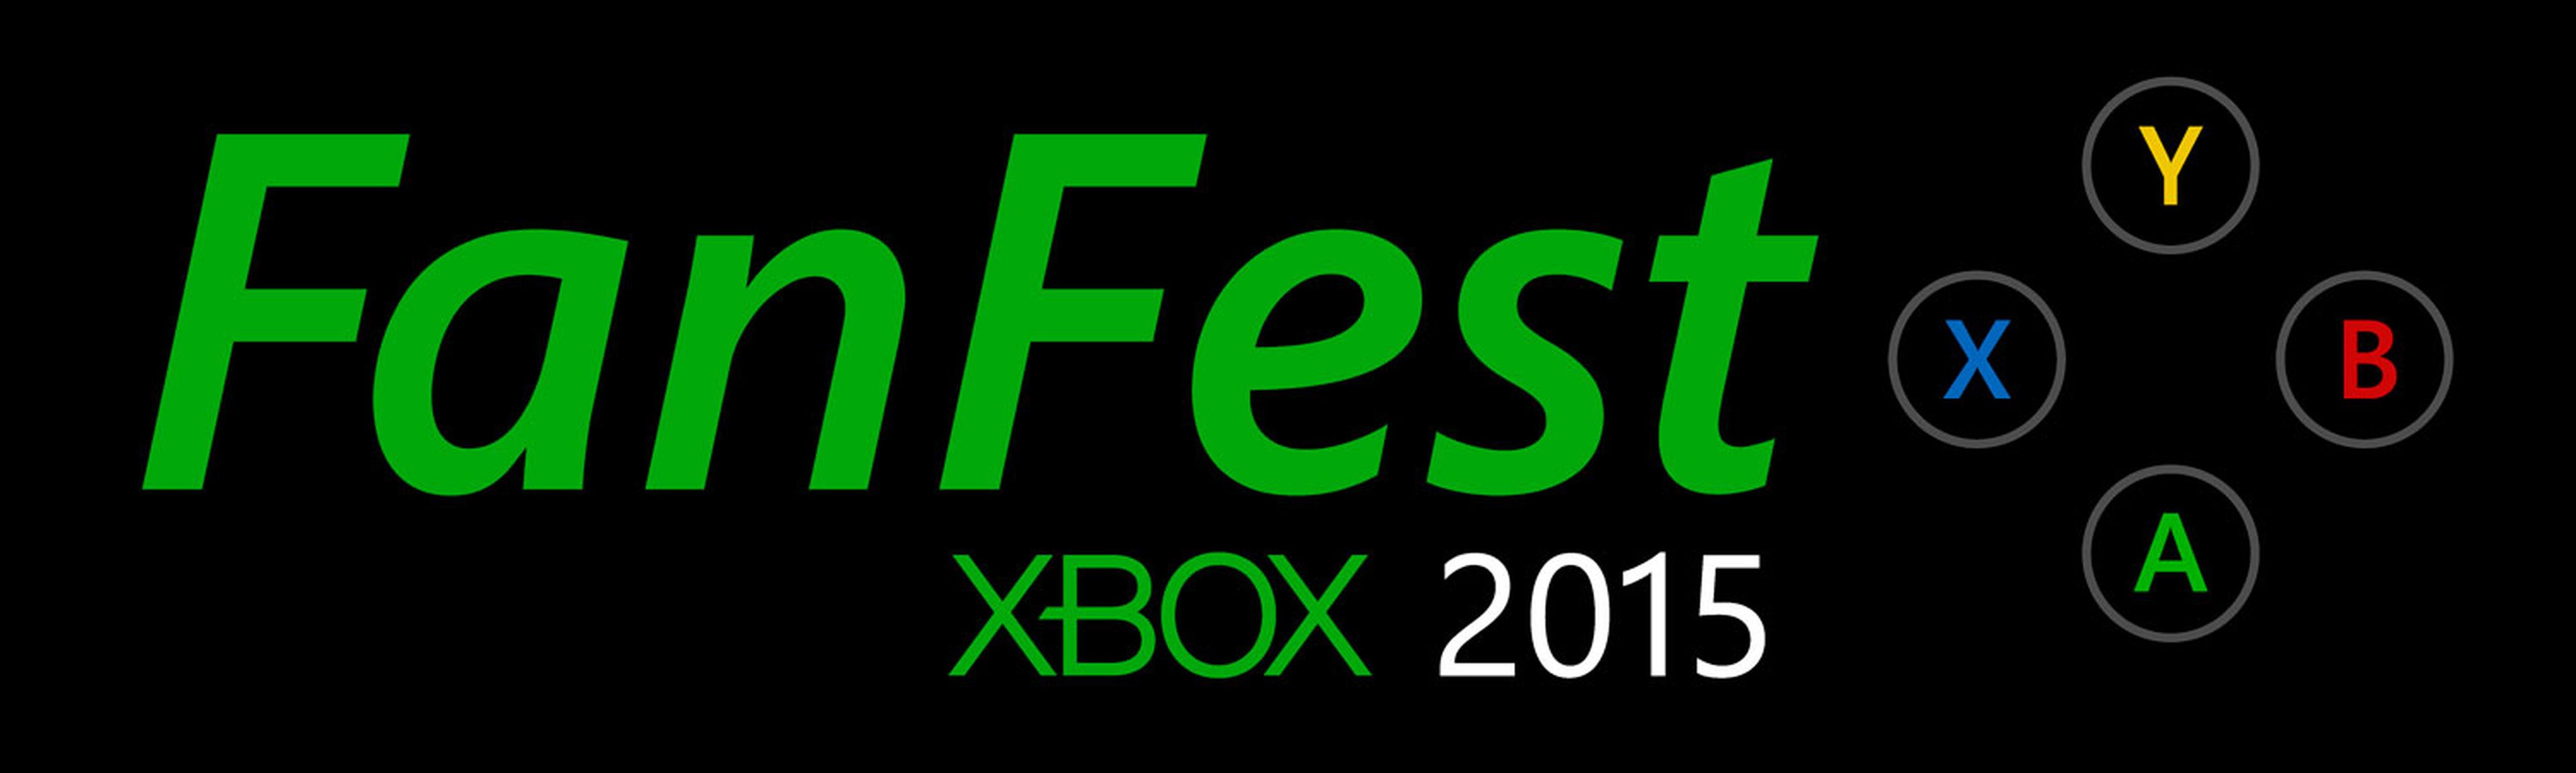 FanFest Xbox 2015 se celebrará del 30 de octubre al 1 de noviembre